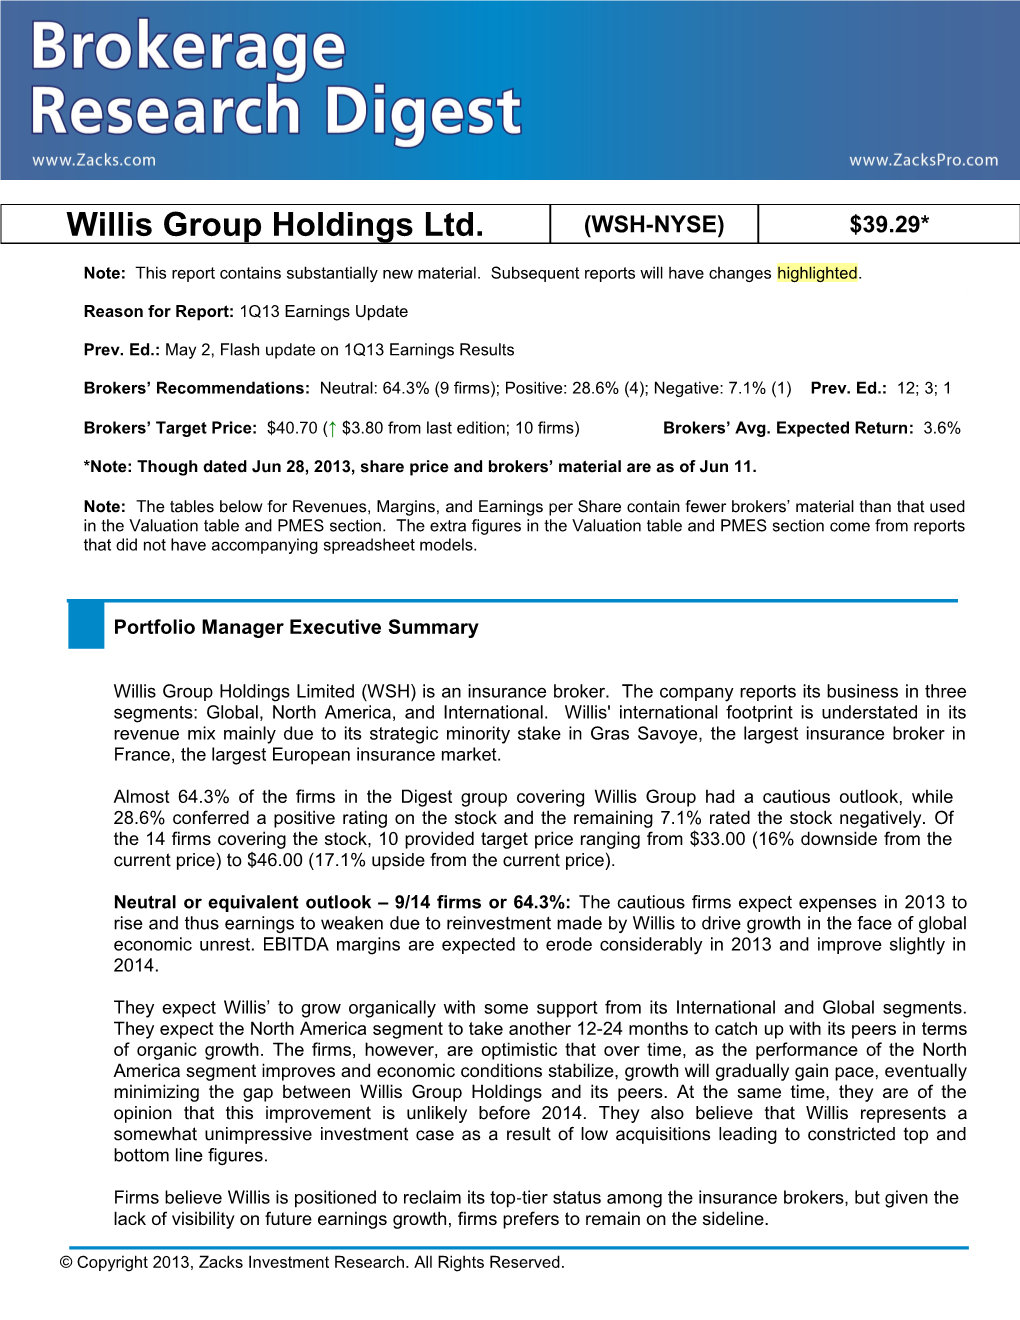 Willis Group Holdings Ltd